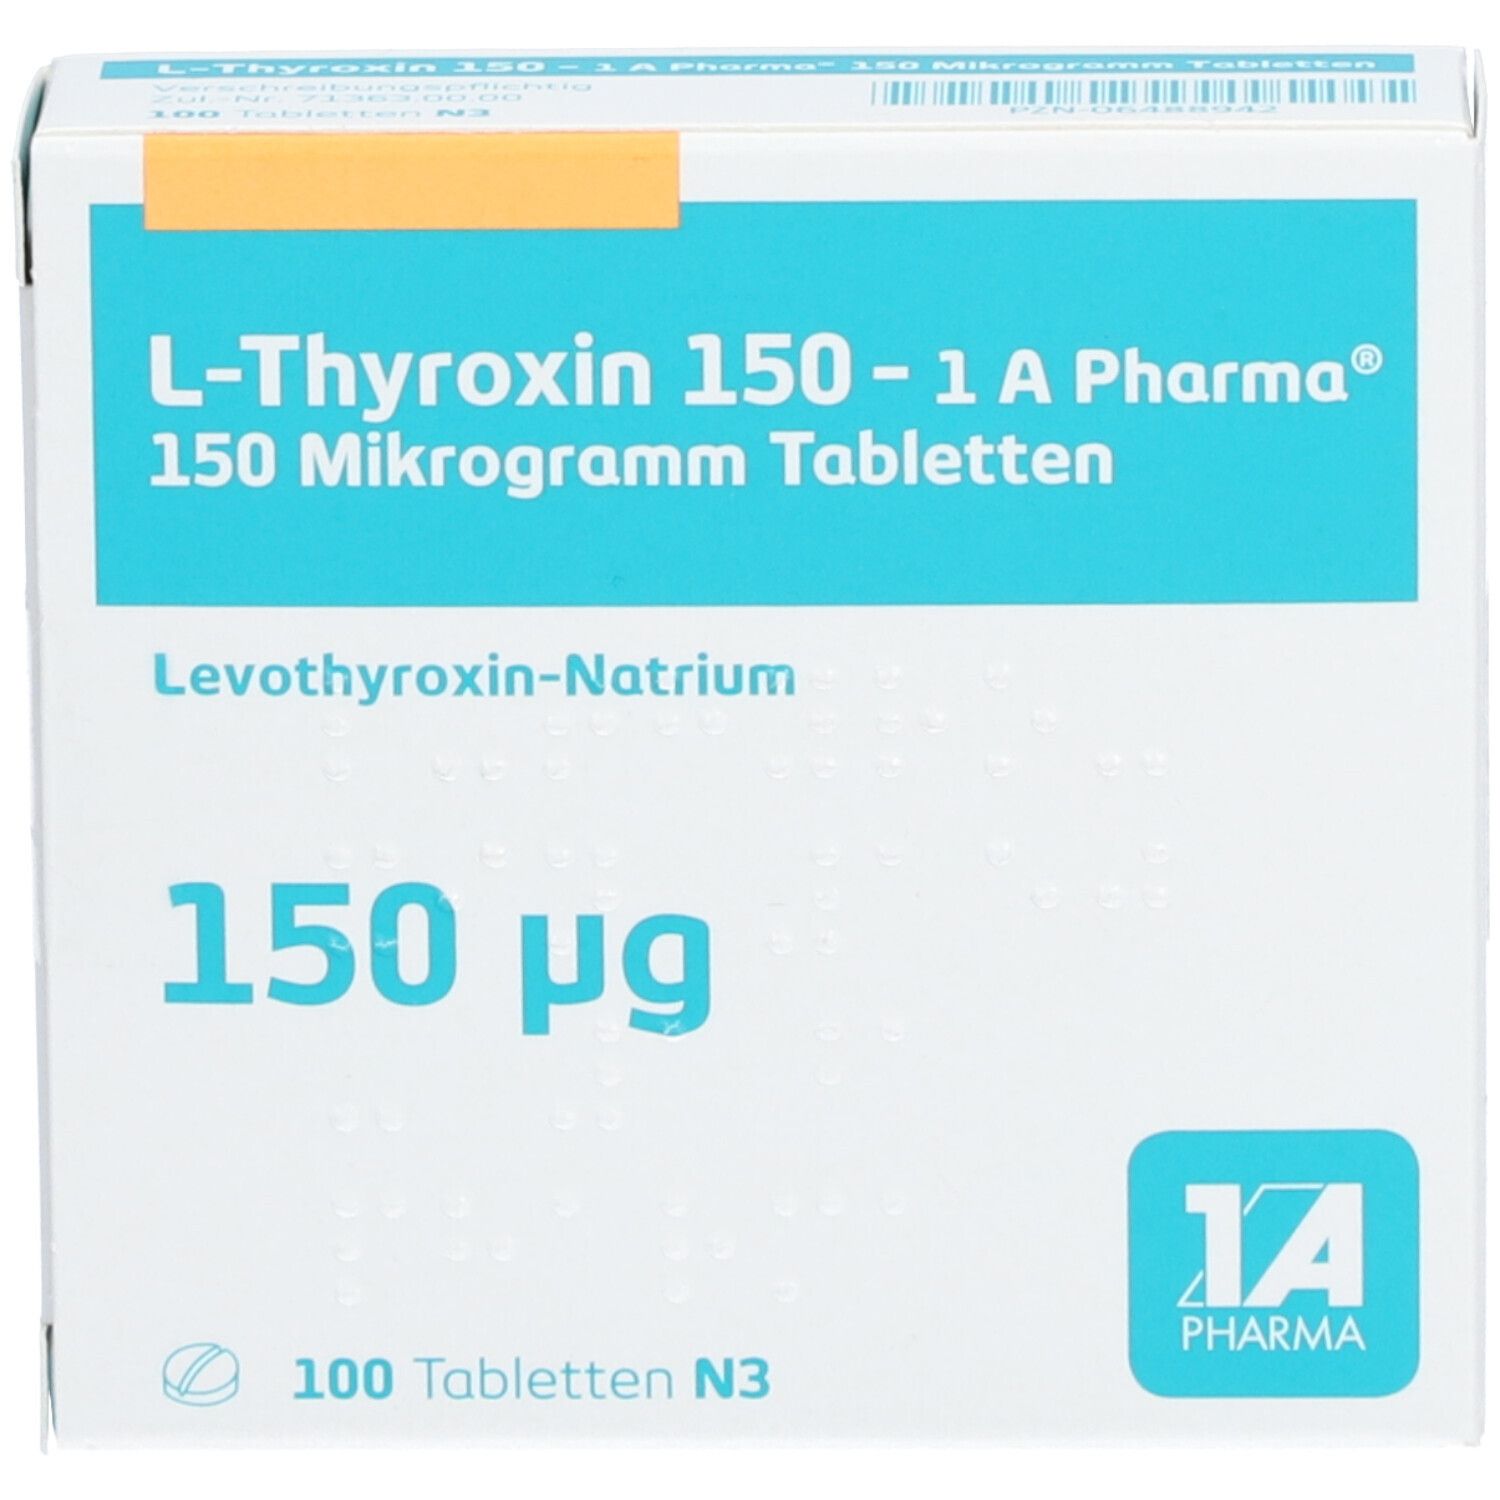 L Thyroxin 150 1A Pharma®